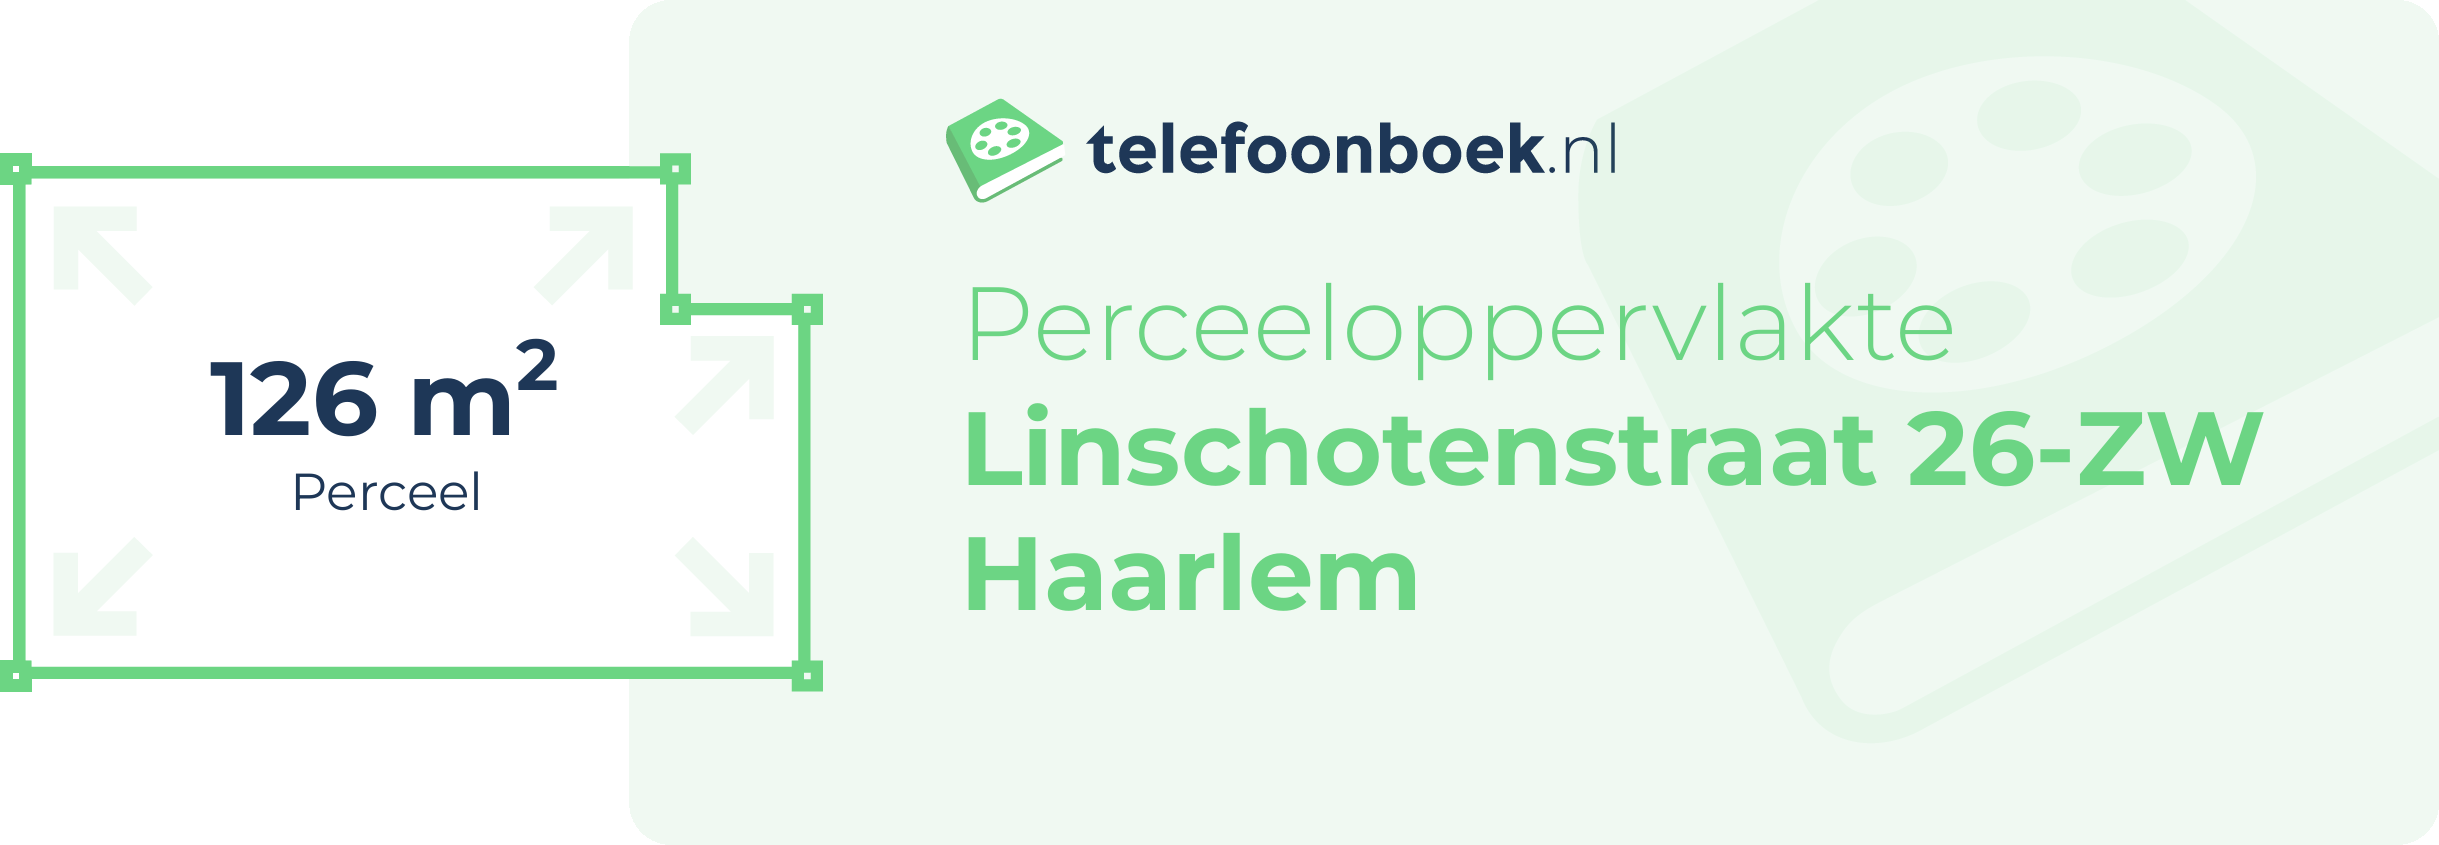 Perceeloppervlakte Linschotenstraat 26-ZW Haarlem